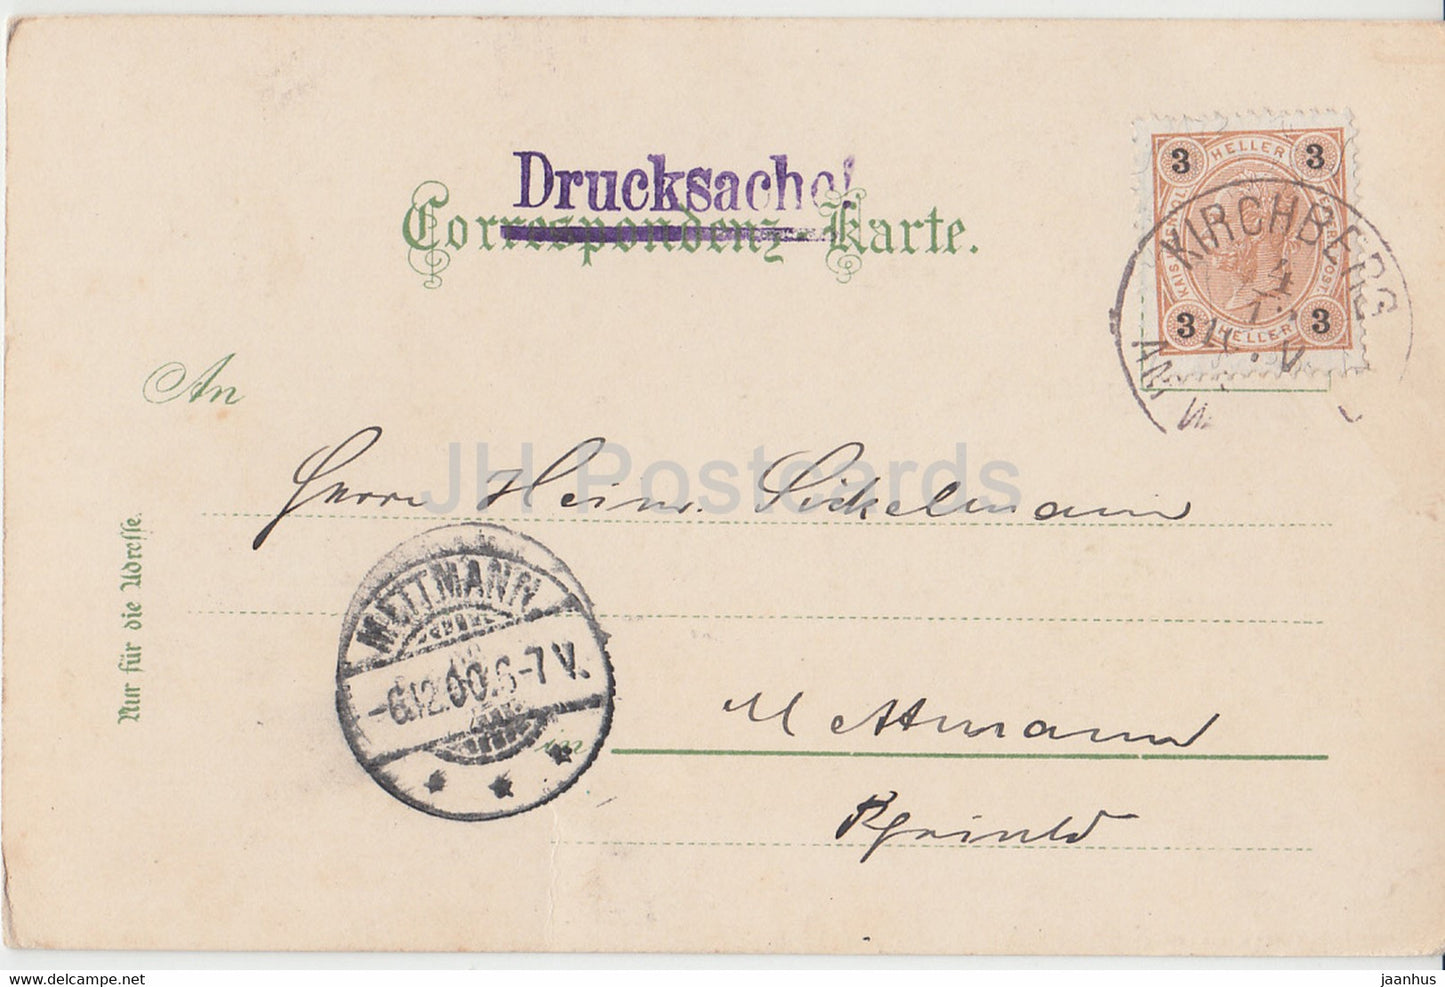 Gruss aus dem Semmering Gebiet - Polleroswand u Raxalp - Drucksache - alte Postkarte - 1900 - Österreich - gebraucht